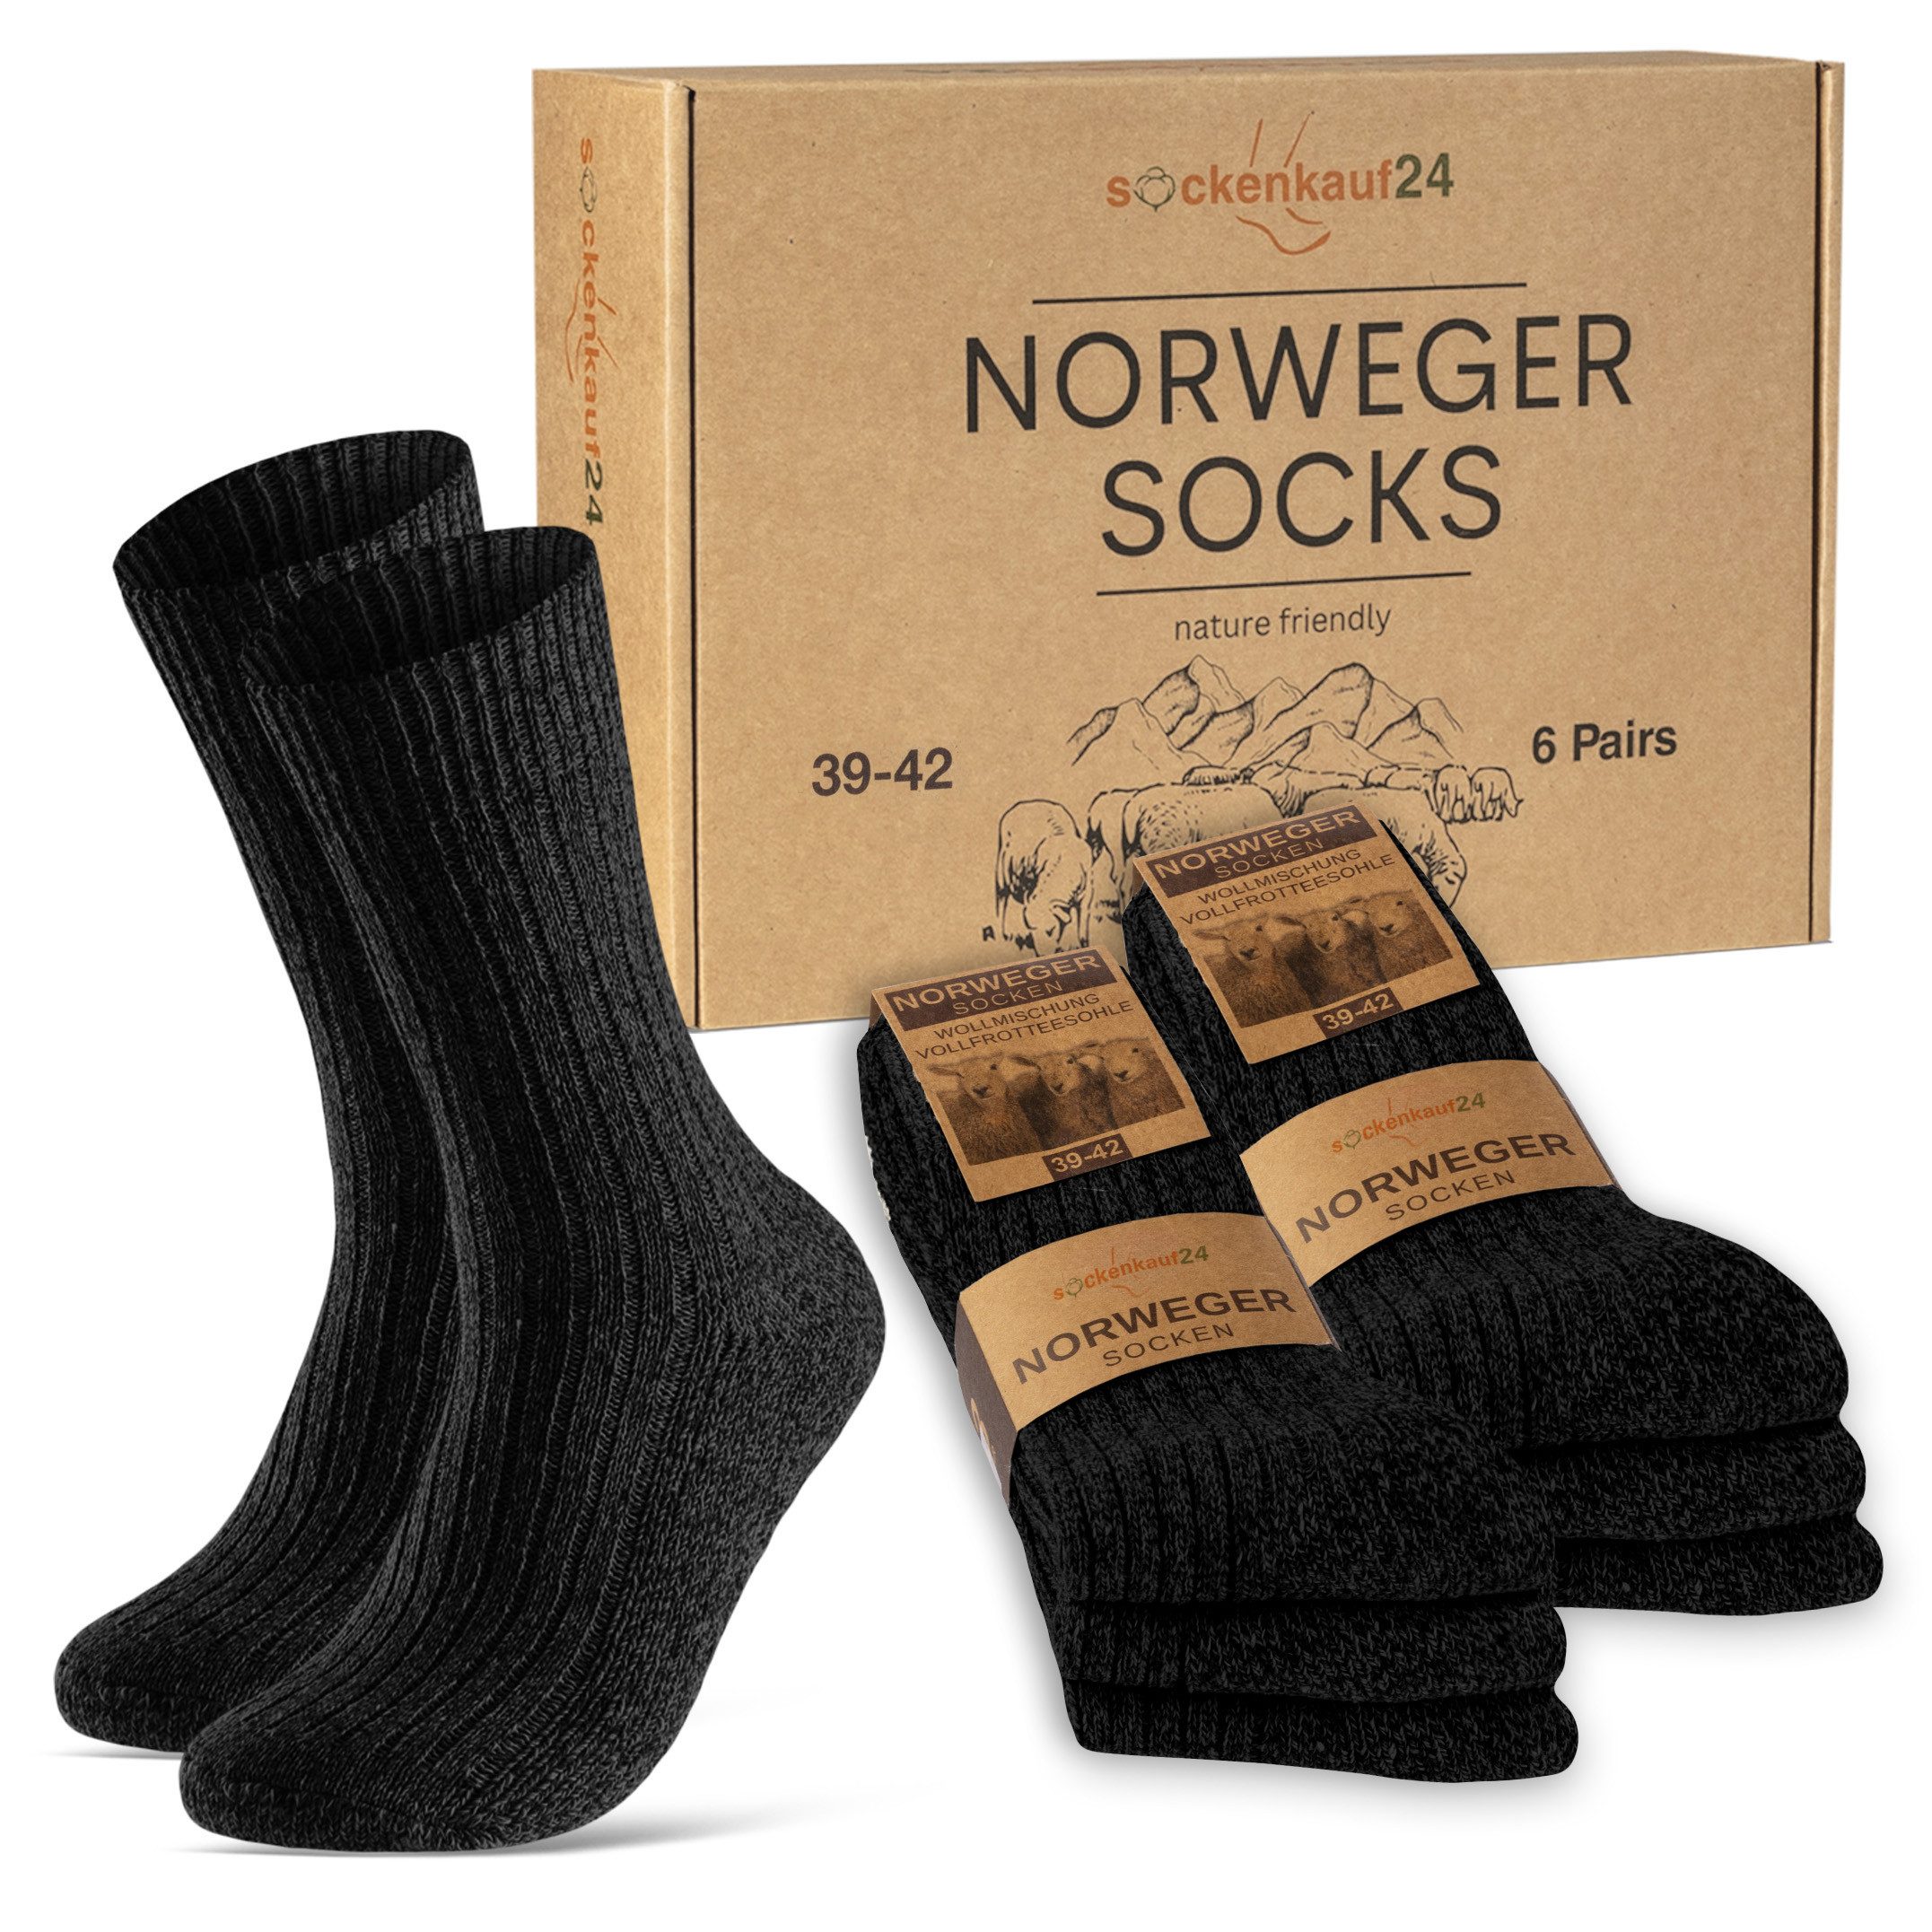 sockenkauf24 Norwegersocken 6 Paar Damen & Herren Socken mit wärmender Wolle Exclusive Wintersocken Schwarz Grau Anthrazit - 70301